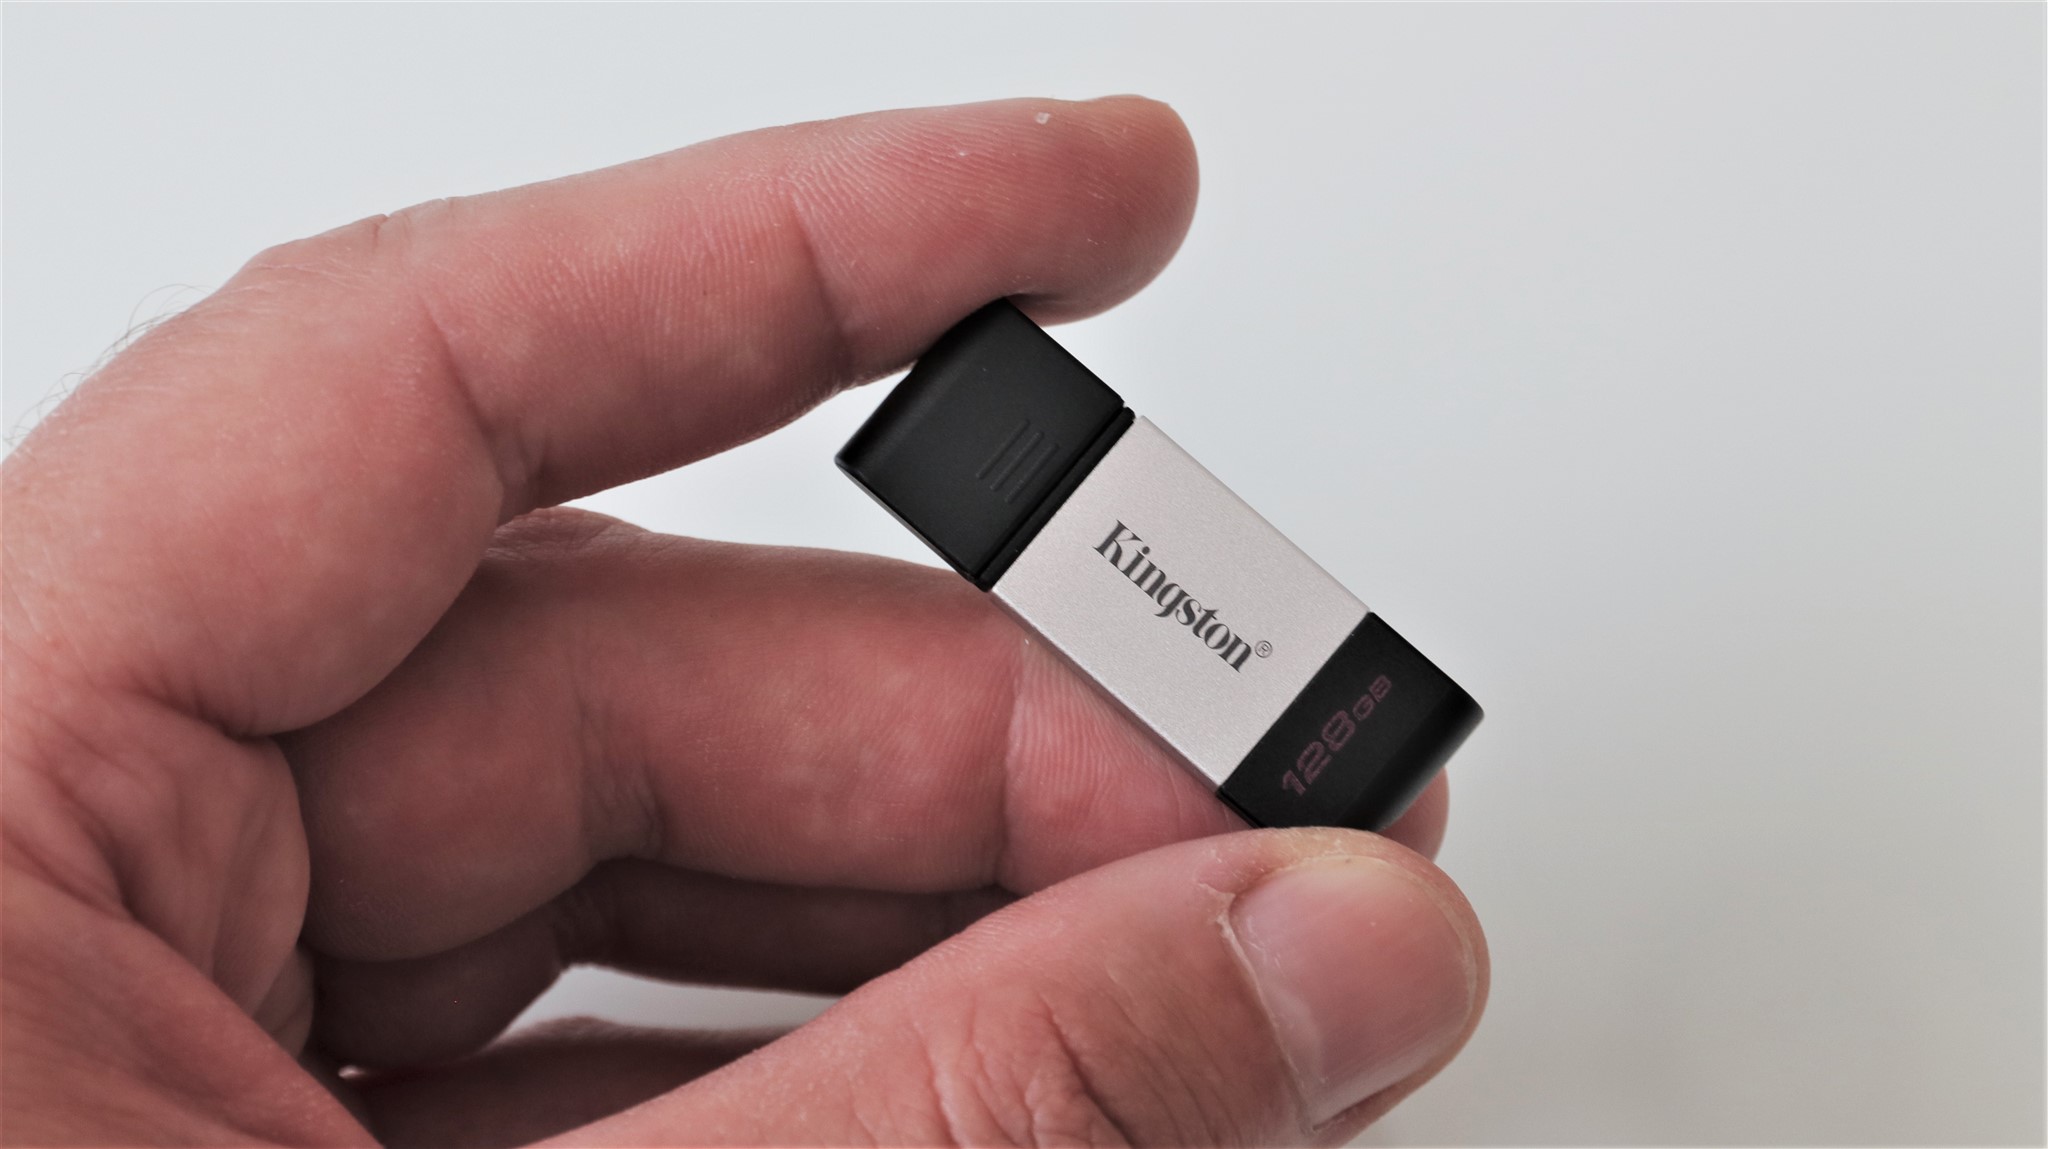 Memorie USB Type-C Kingston DataTraveler 80 128 GB